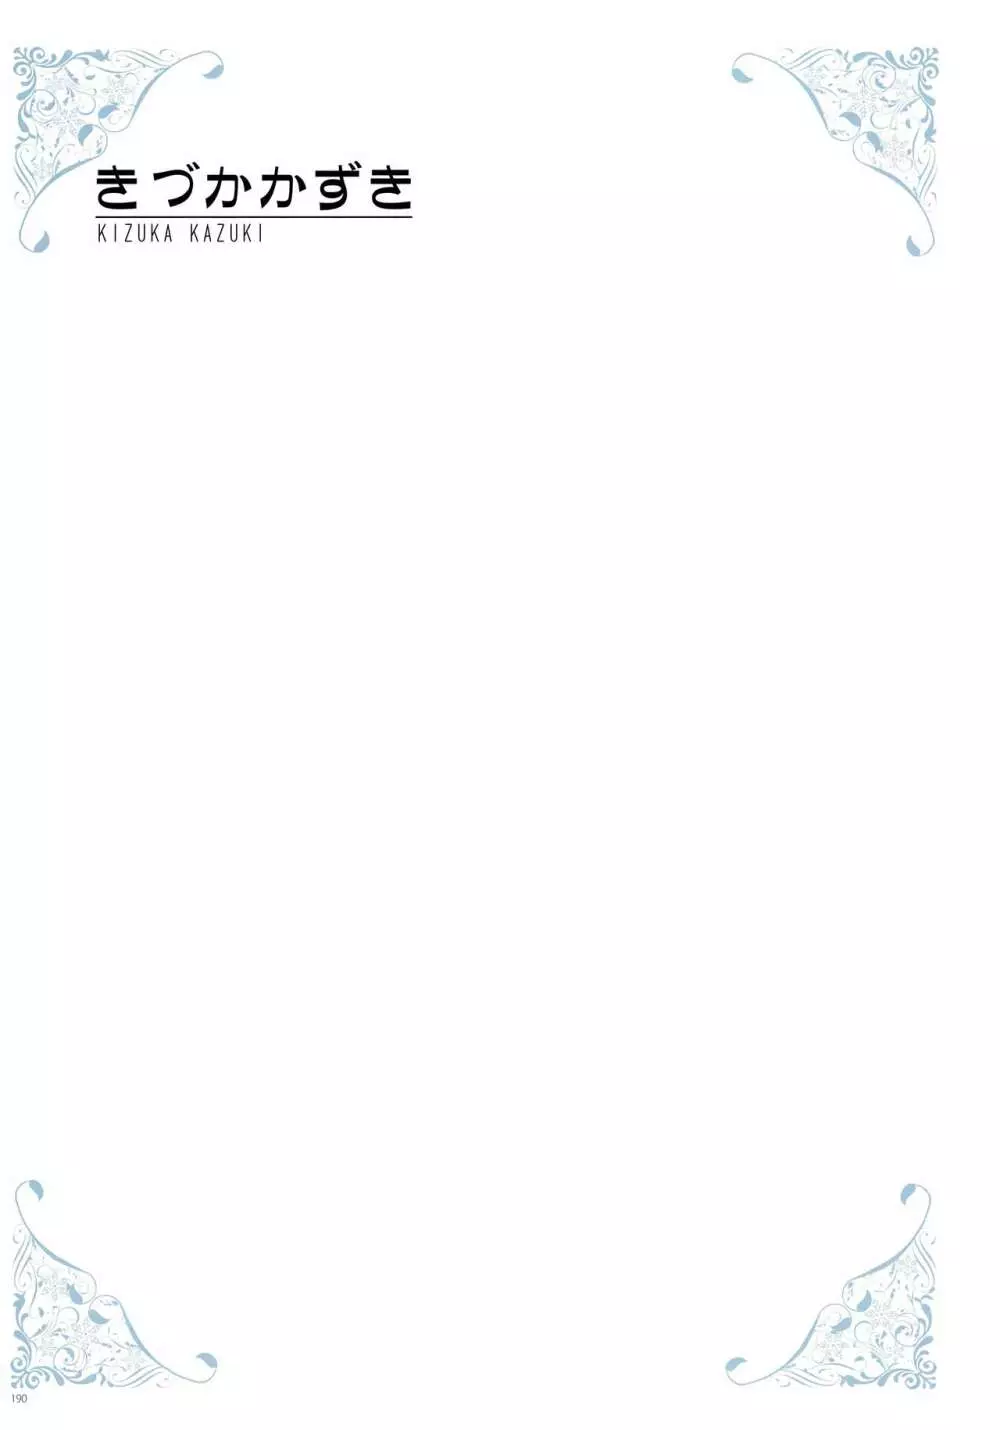 [よろず] うりぼうざっか店 パンツ特化型画集「Under wears 4-PINK LABEL-」+ Message Collection BOOK 190ページ